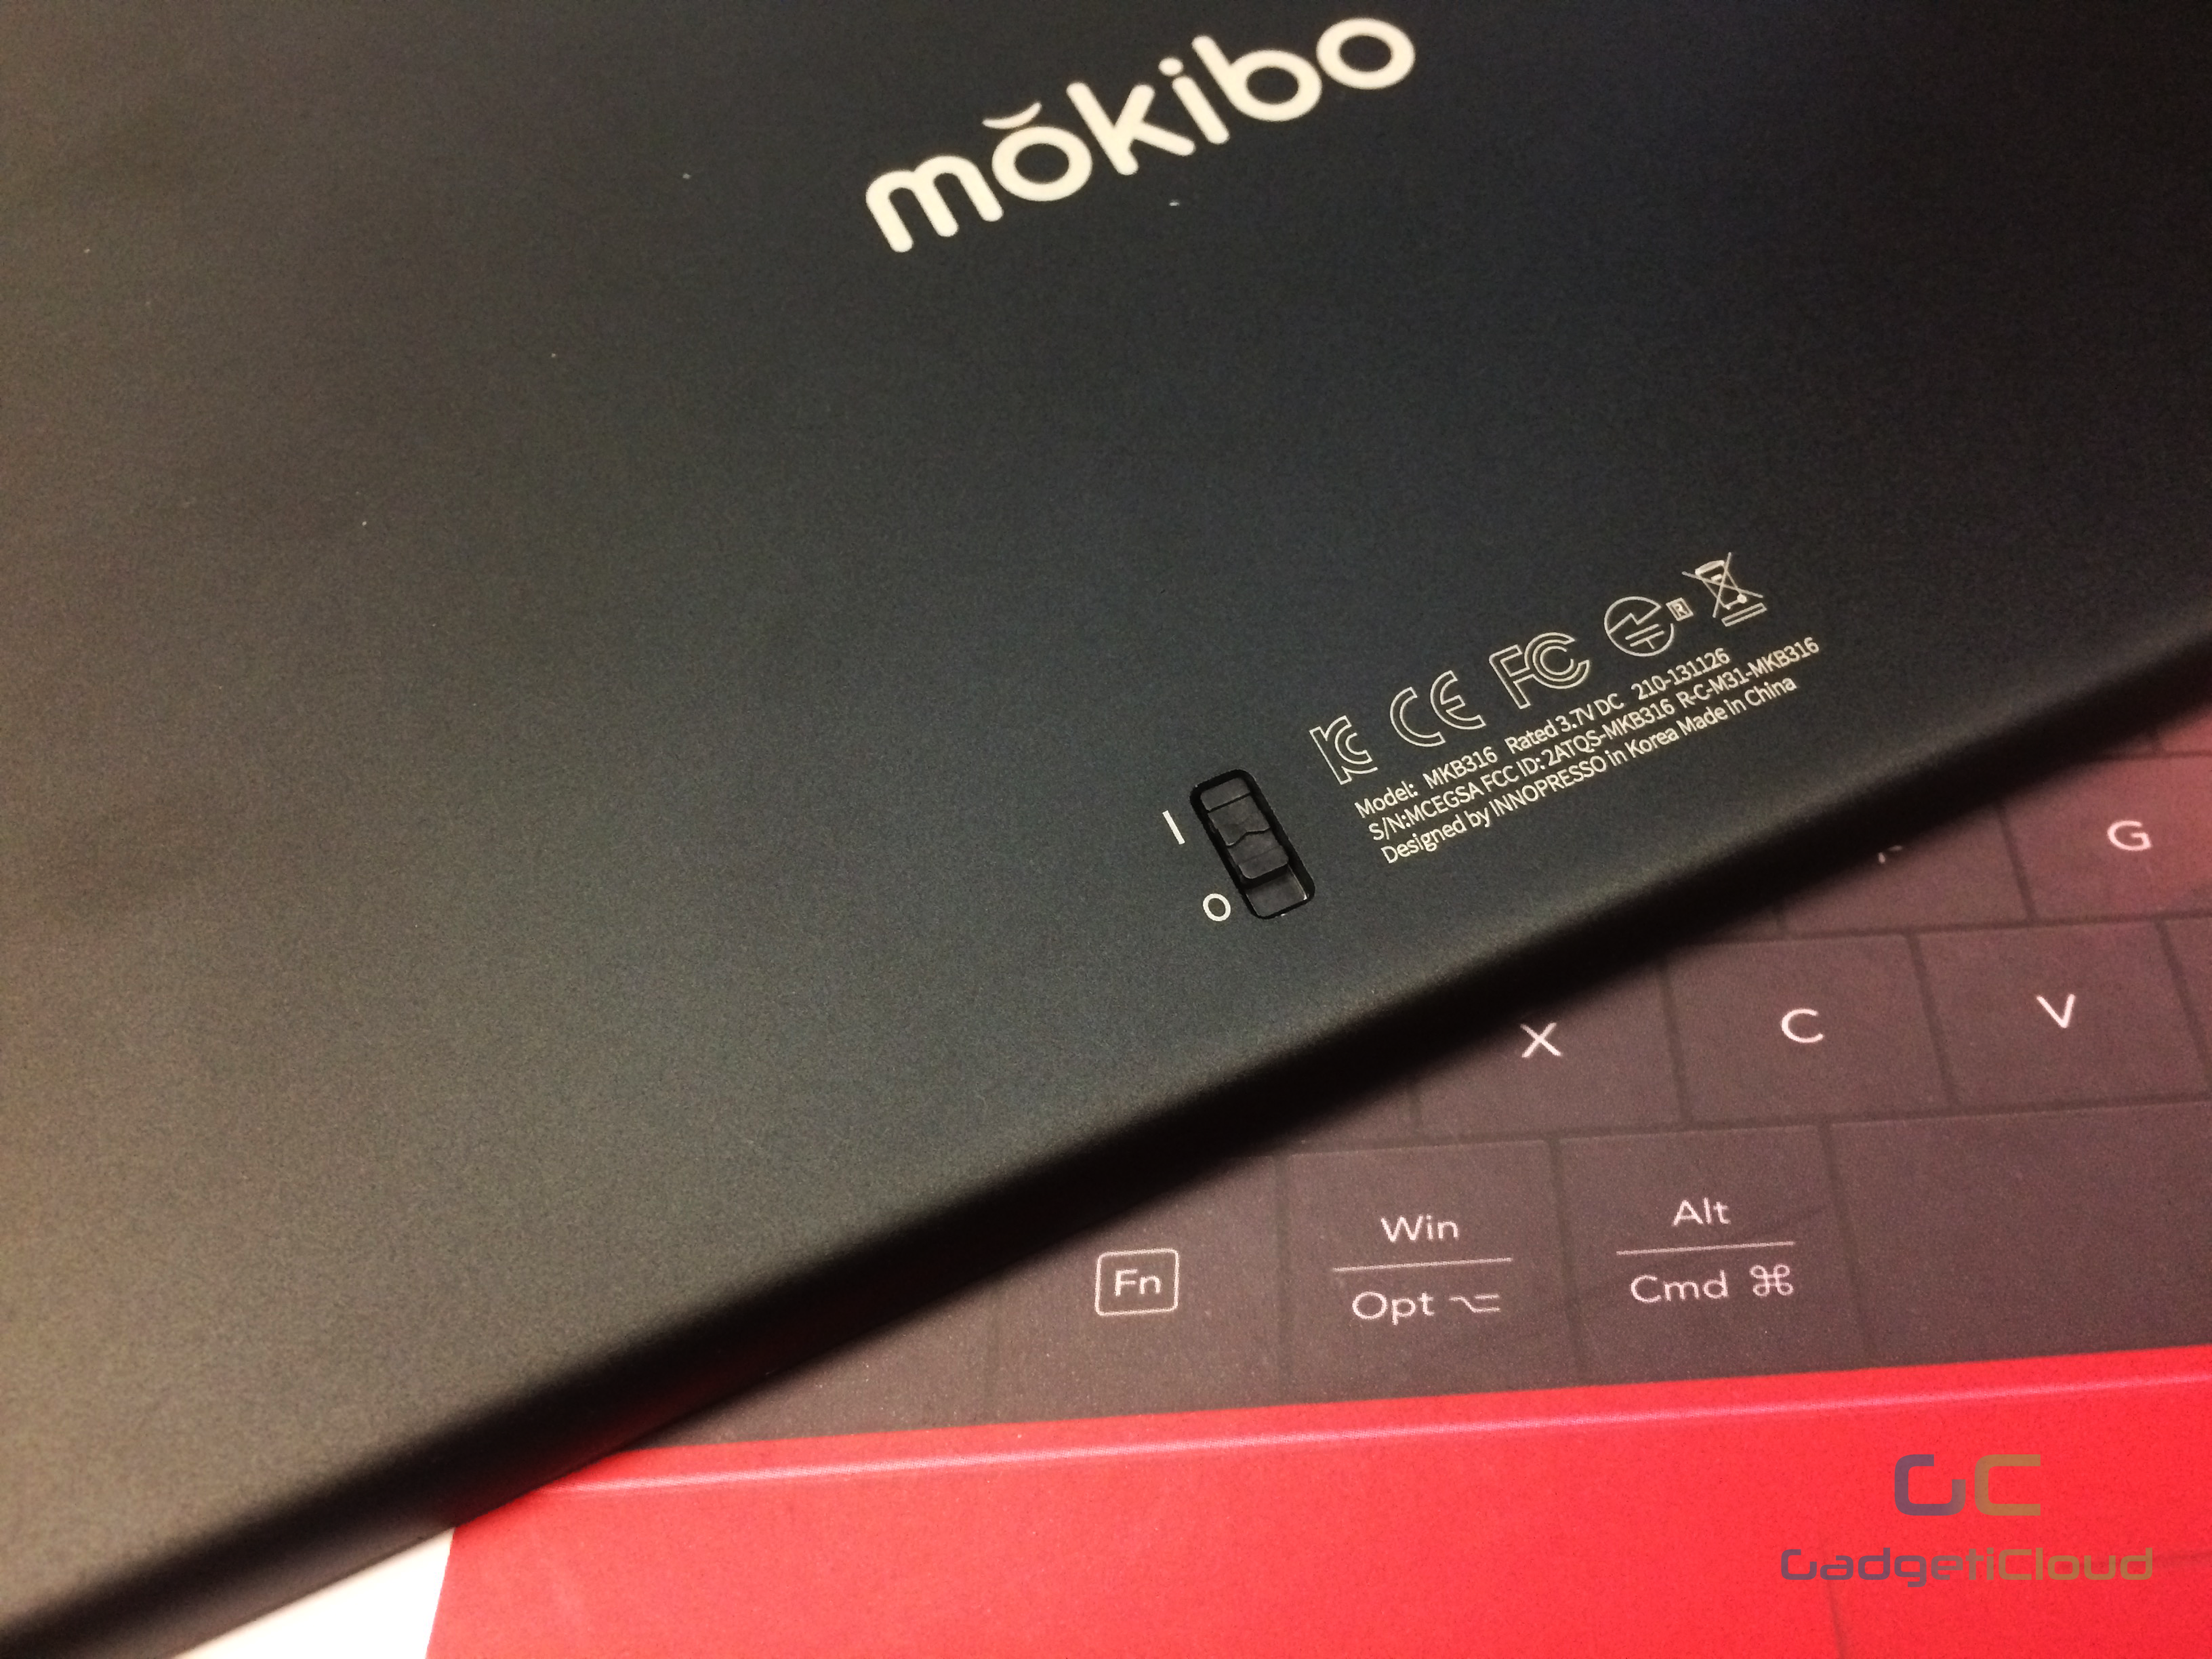 lexuma-mokibo-touchpad-keyboard-bluetooth-wireless-pantograph-laptop-black-power-switch